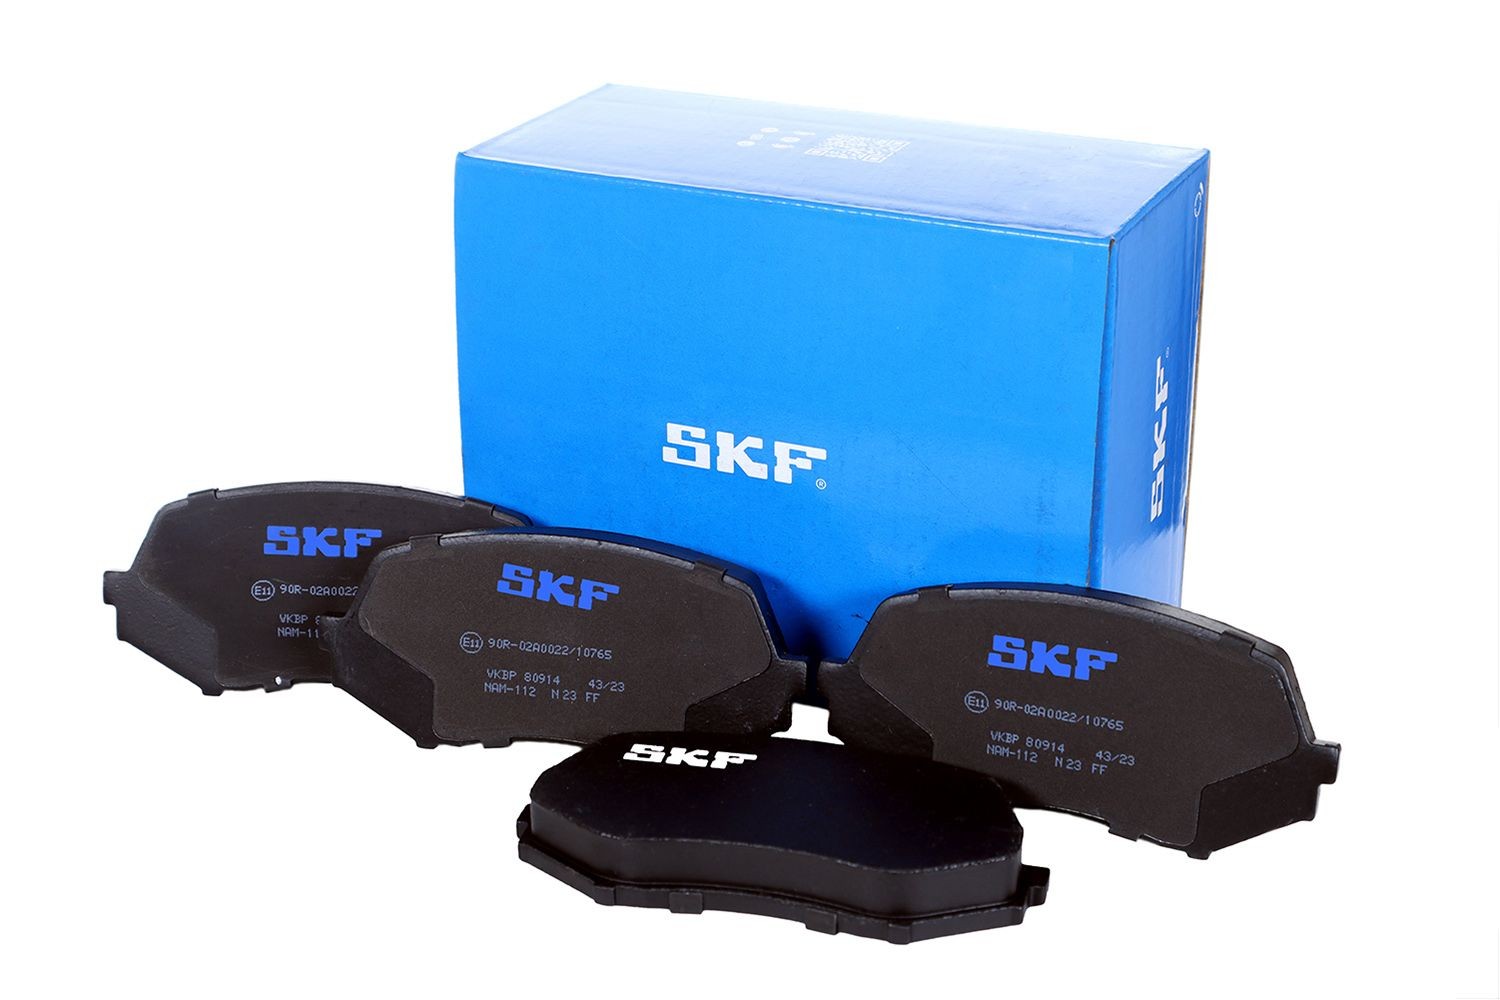 VKBP 80914 SKF Bremsbeläge für MULTICAR online bestellen